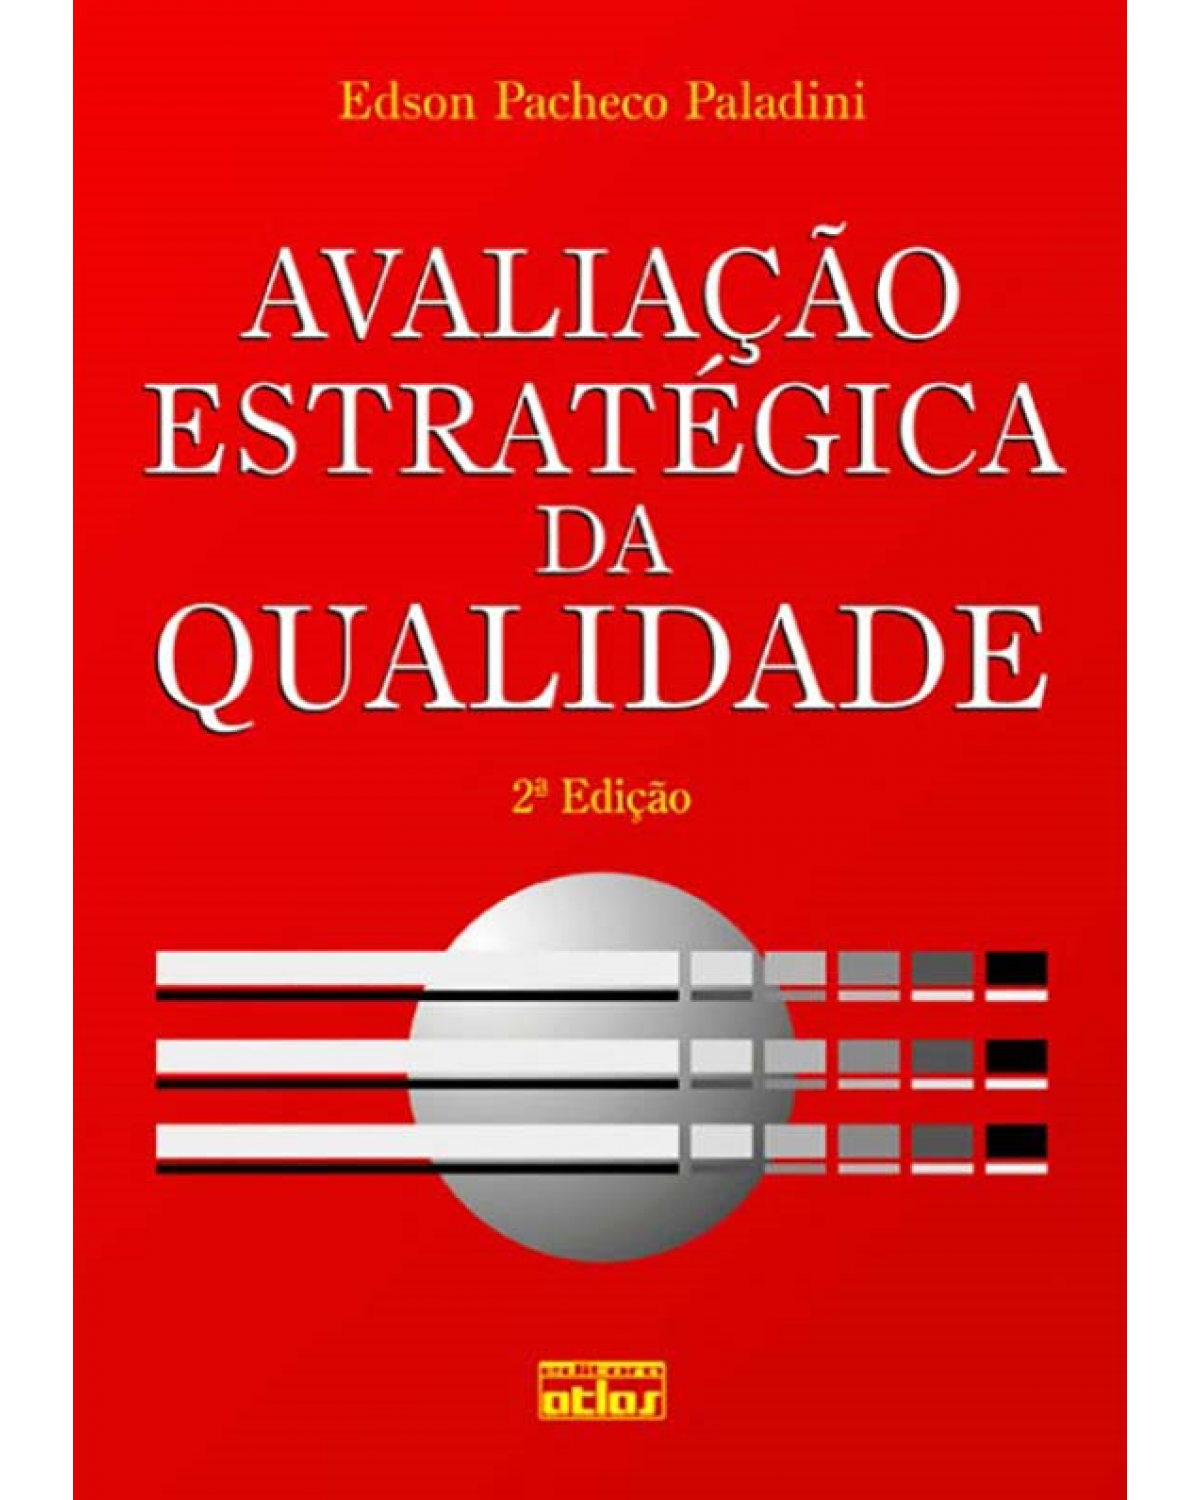 Avaliação estratégica da qualidade - 2ª Edição | 2011